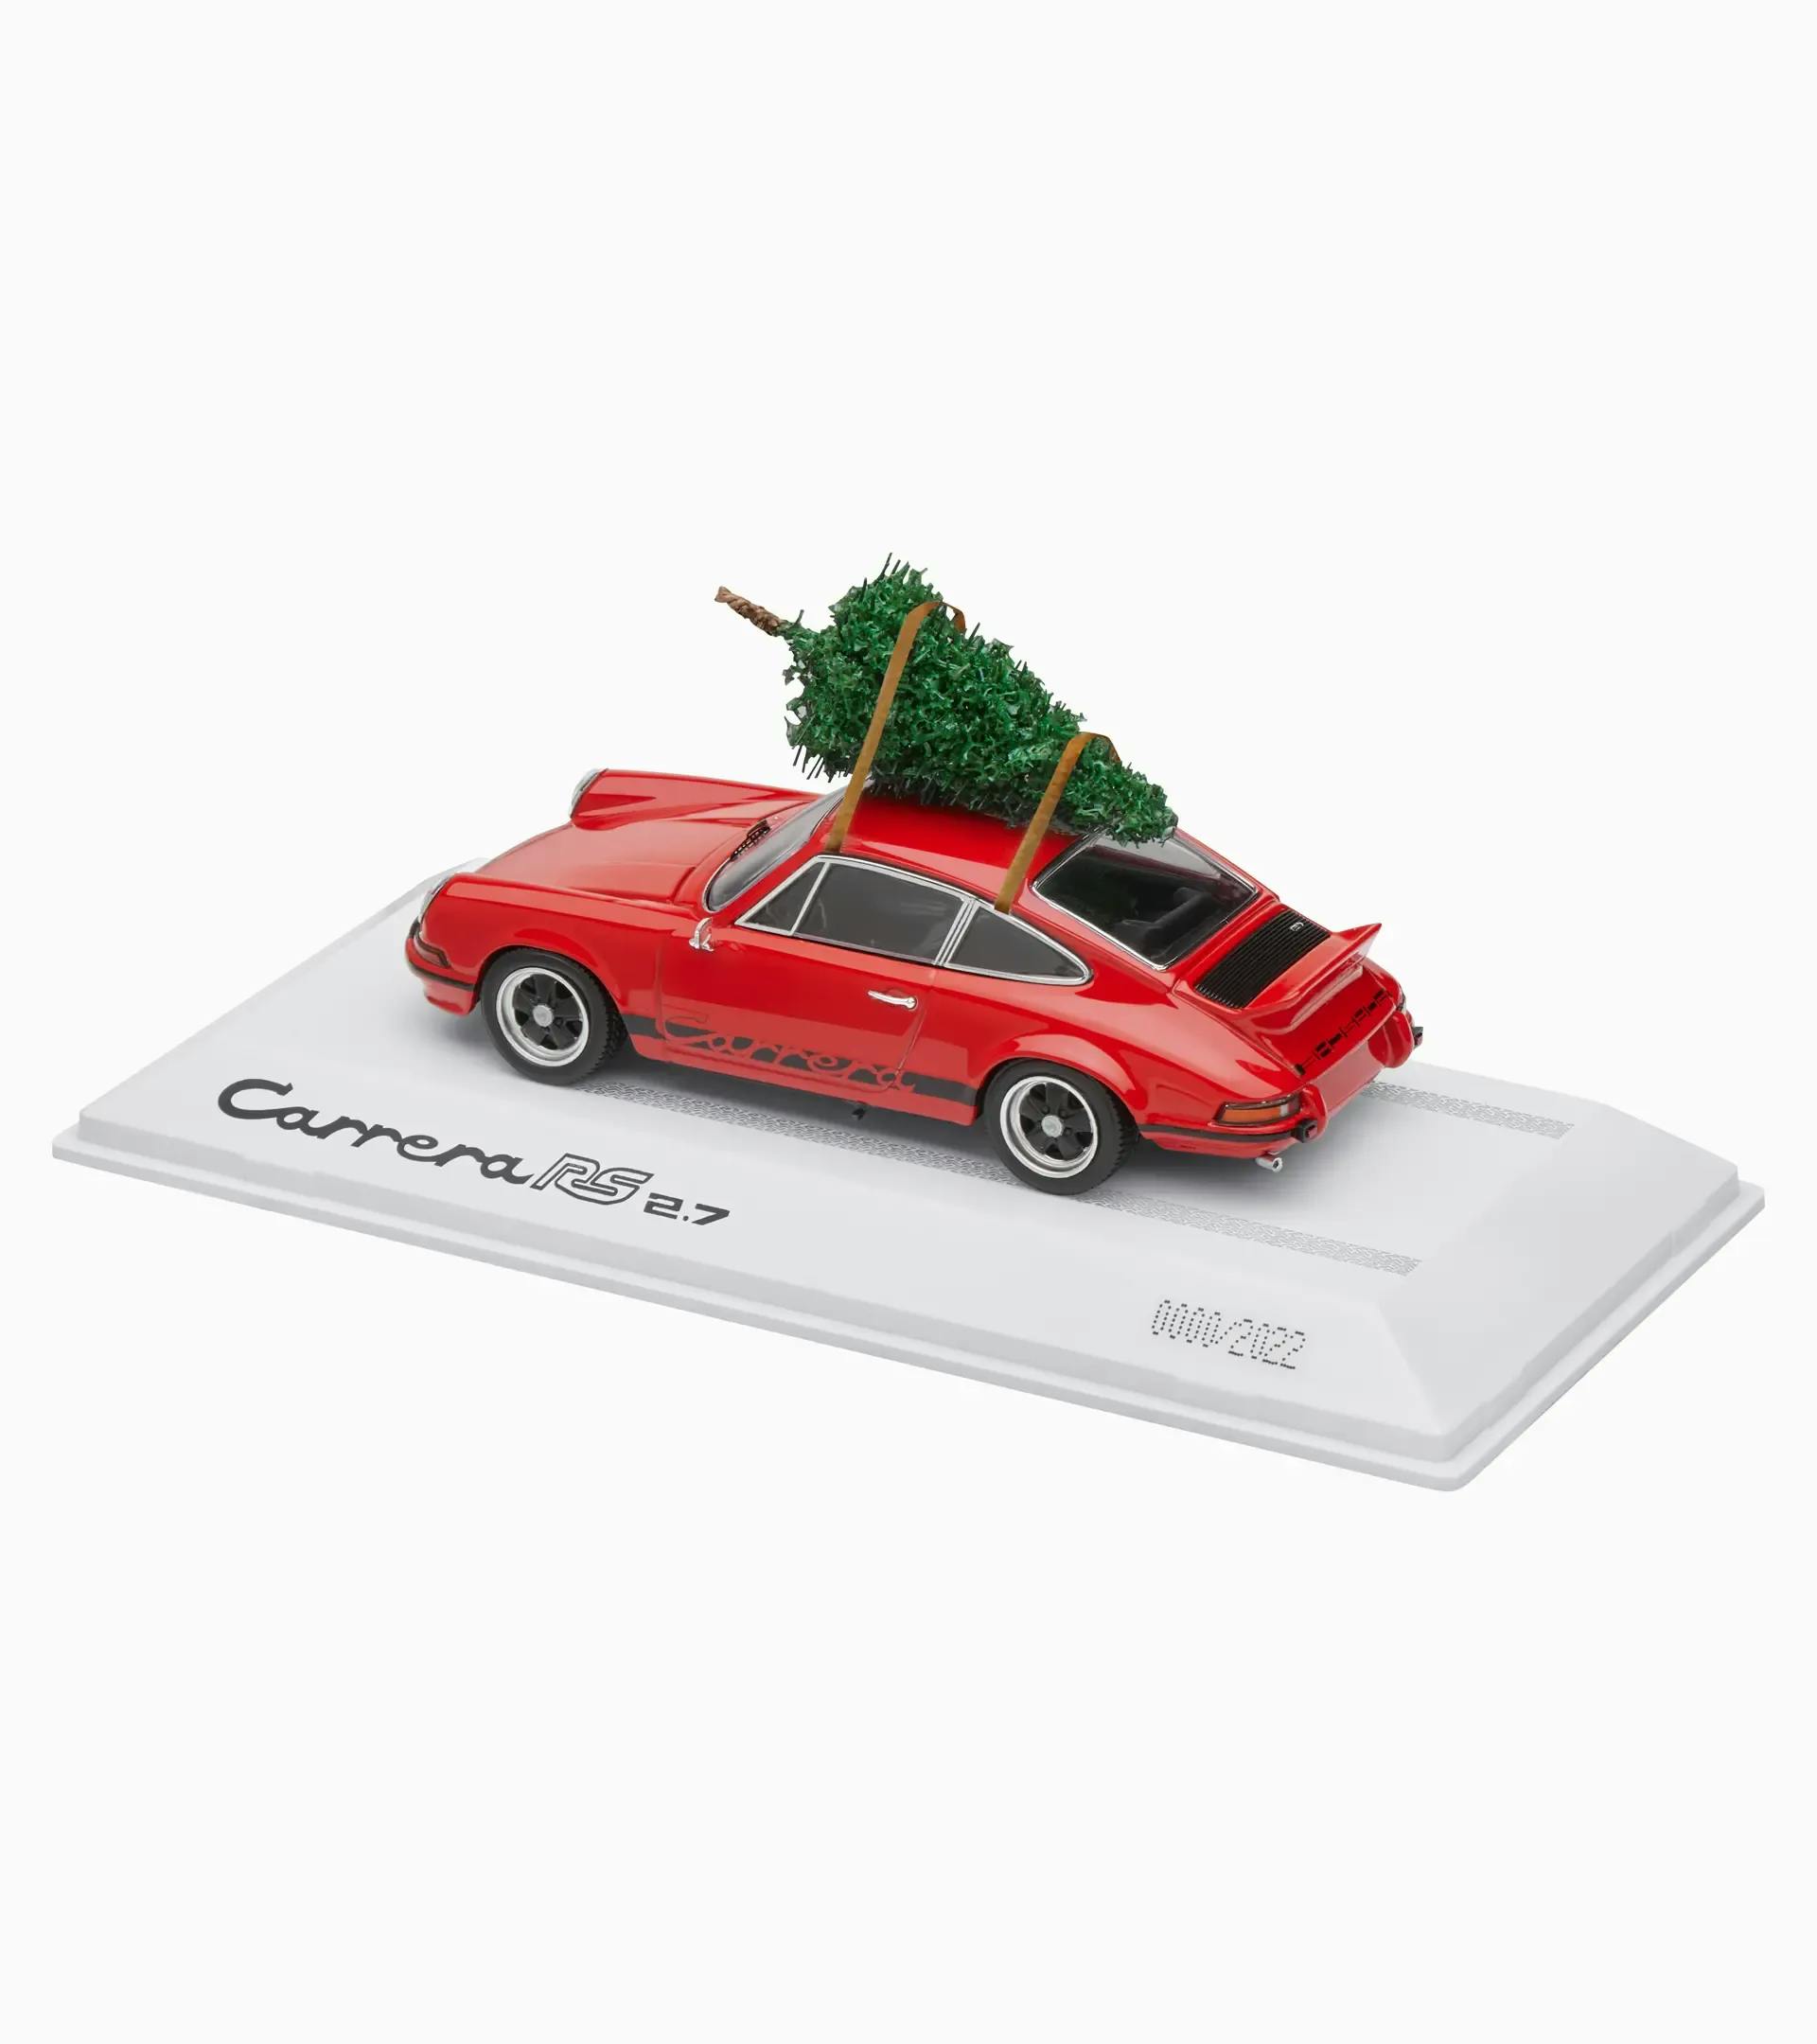 Idées Cadeaux & Porsche : le Top 20 pour Noël 2018 By Selection RS